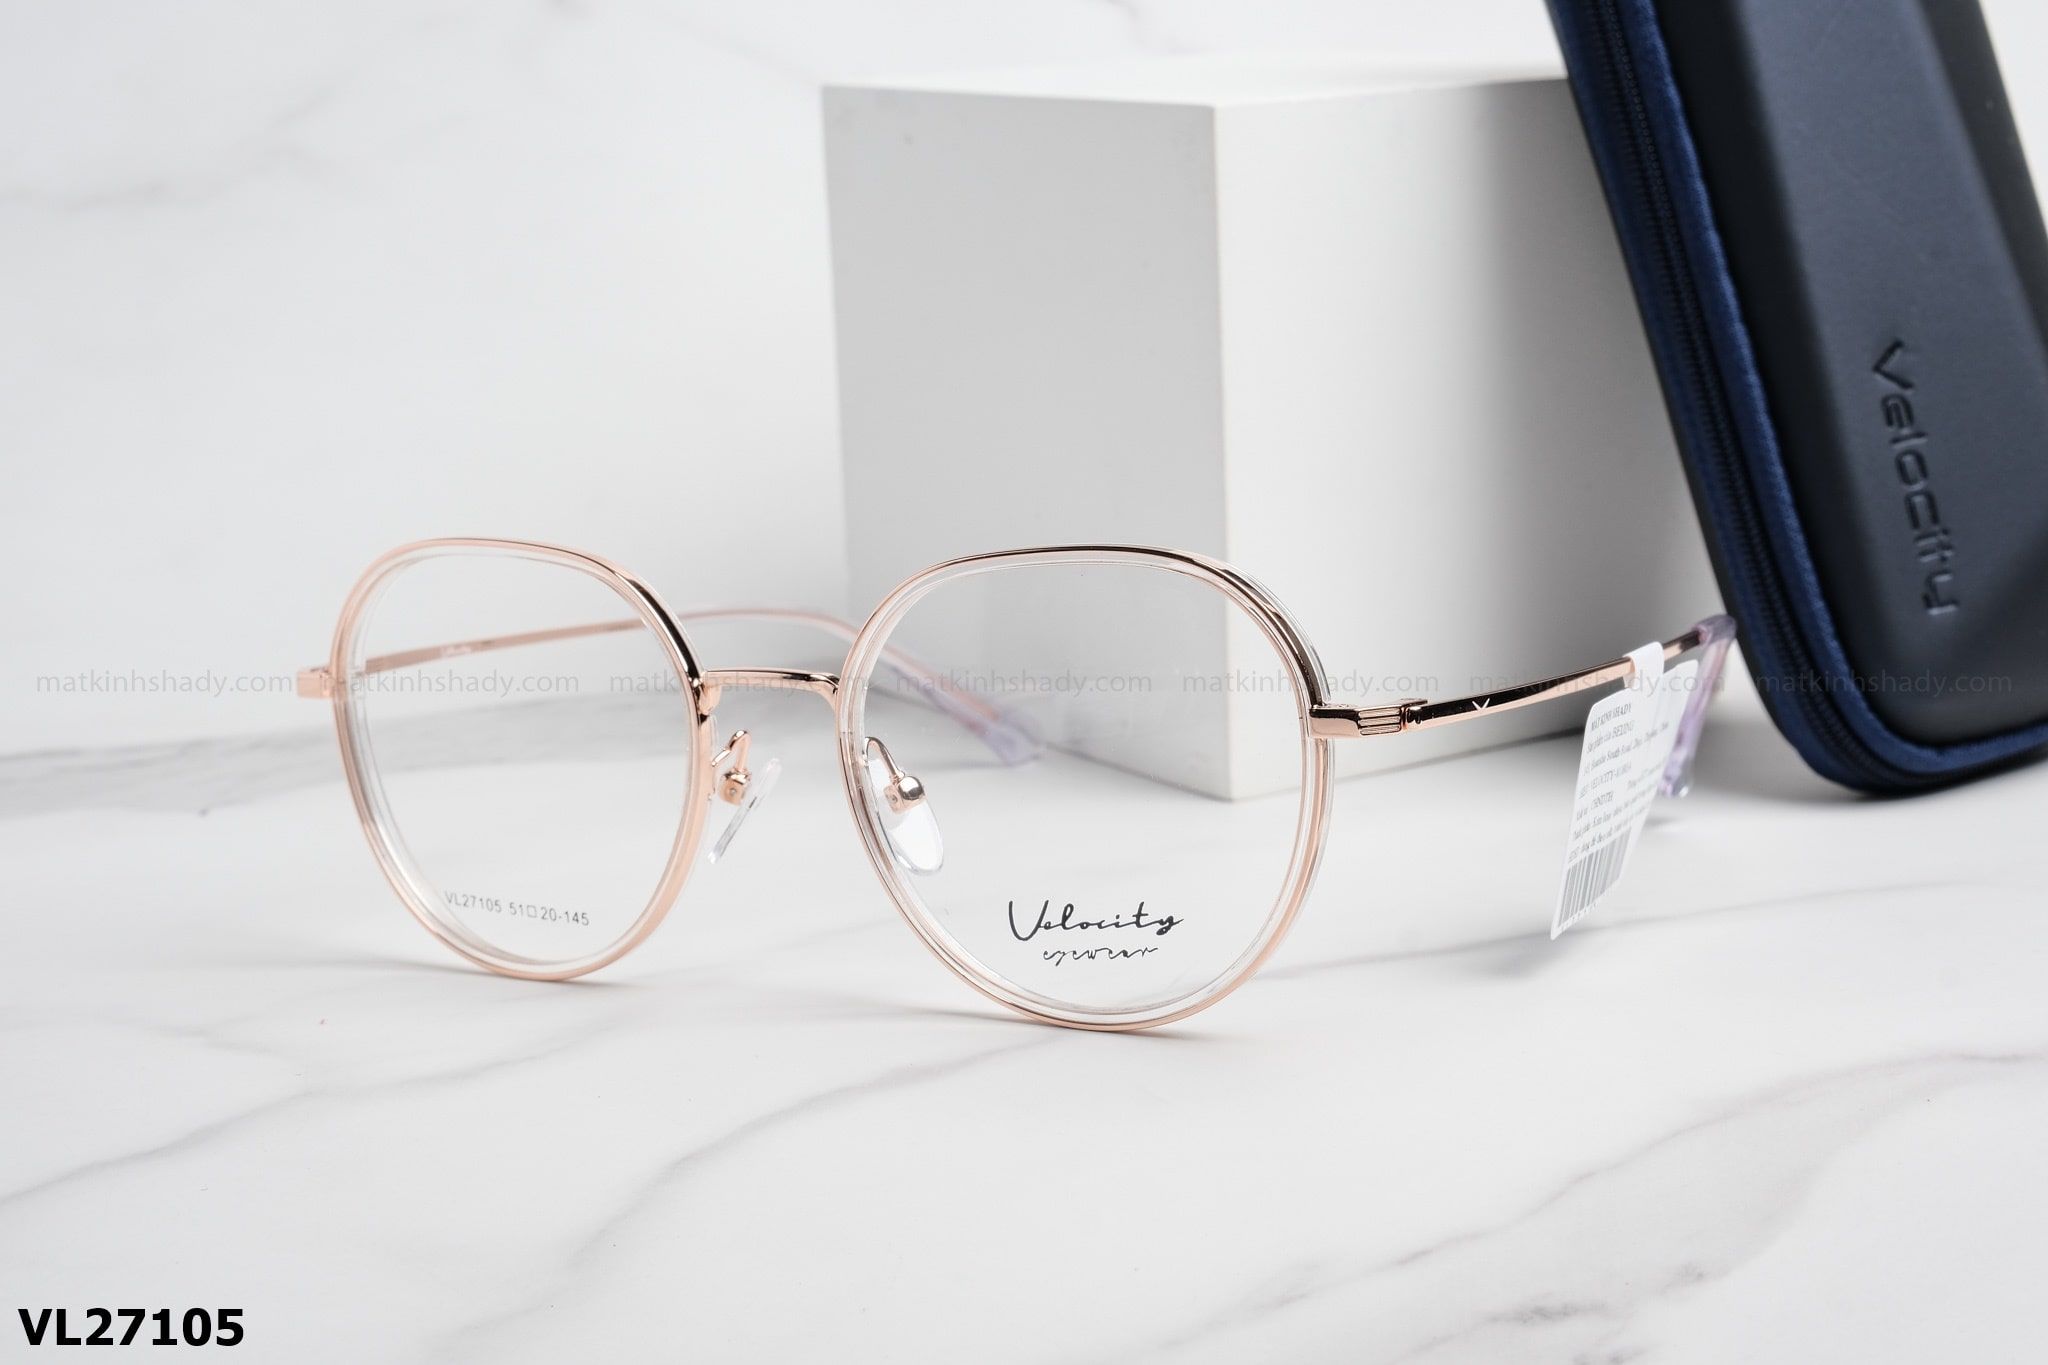  Velocity Eyewear - Glasses - VL27105 